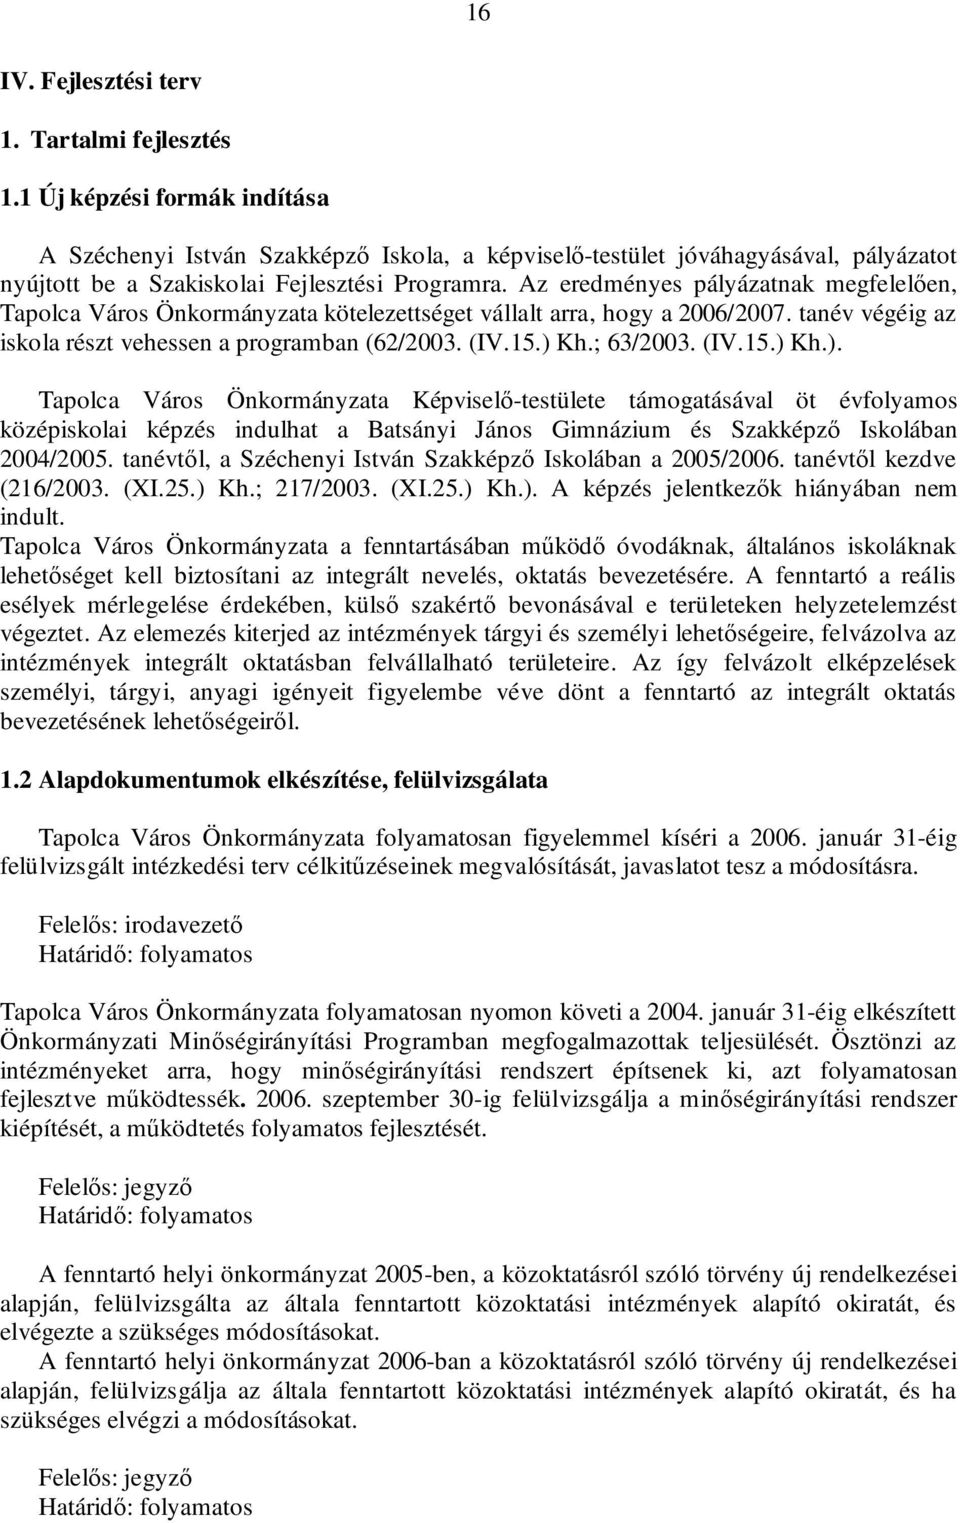 Az eredményes pályázatnak megfelelően, Tapolca Város Önkormányzata kötelezettséget vállalt arra, hogy a 2006/2007. tanév végéig az iskola részt vehessen a programban (62/2003. (IV.15.) Kh.; 63/2003.